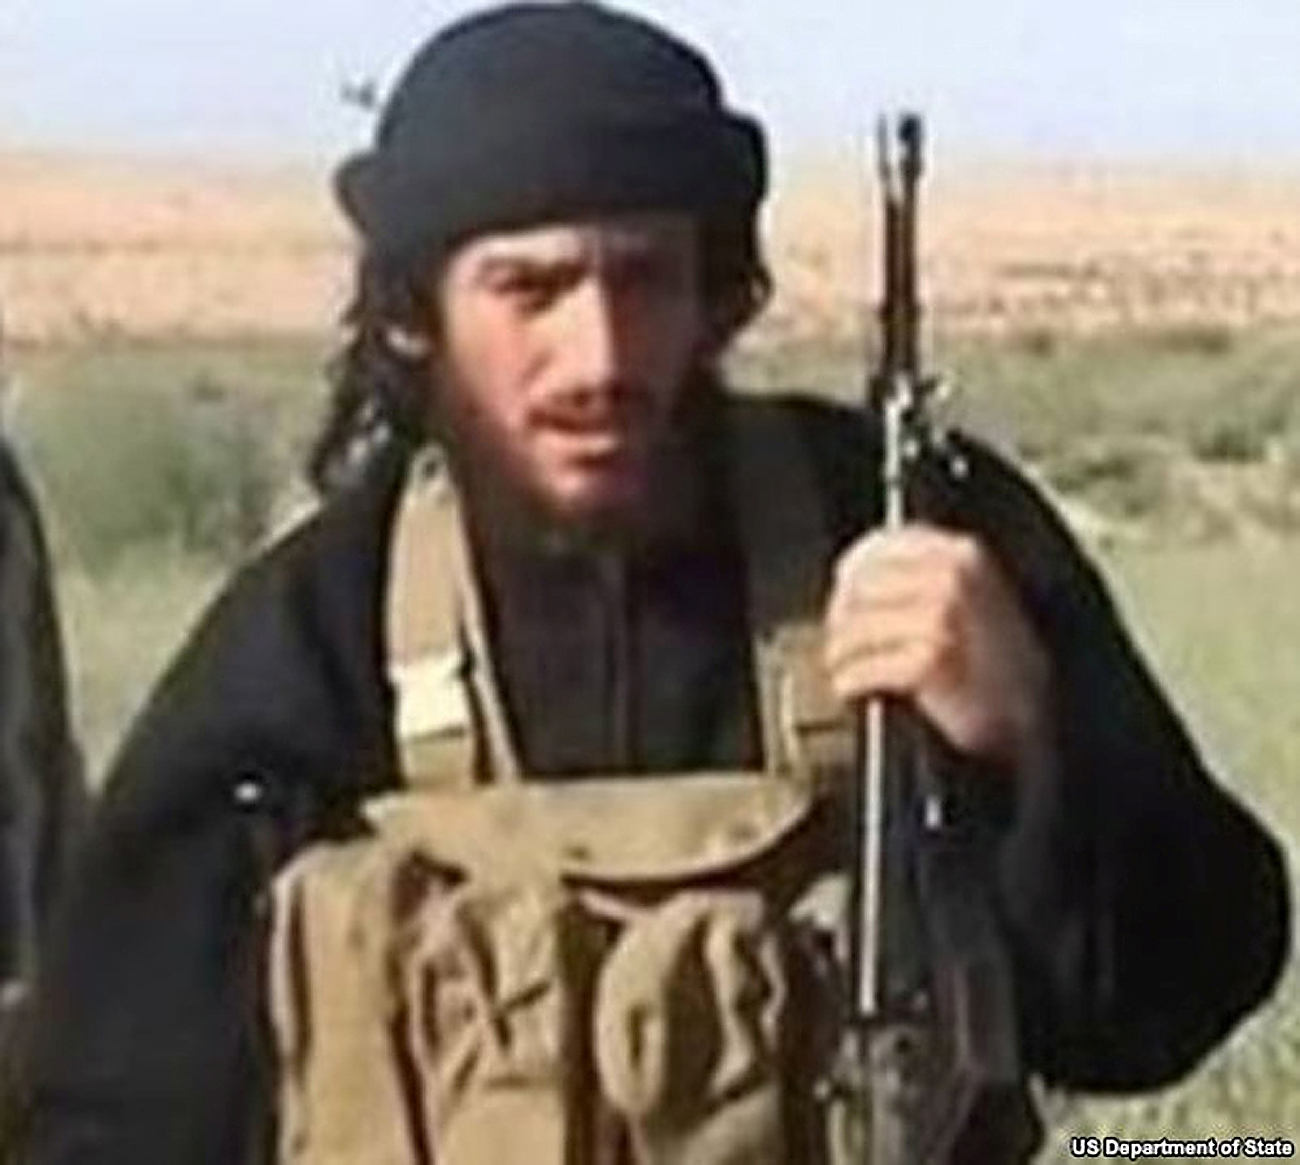 Abu Mohammed al-Adnani dianggap sebagai 'Orang Nomor Dua' dalam organisasi teroris ISIS, setelah pemimpin ISIS Abu Bakr al-Baghdadi.